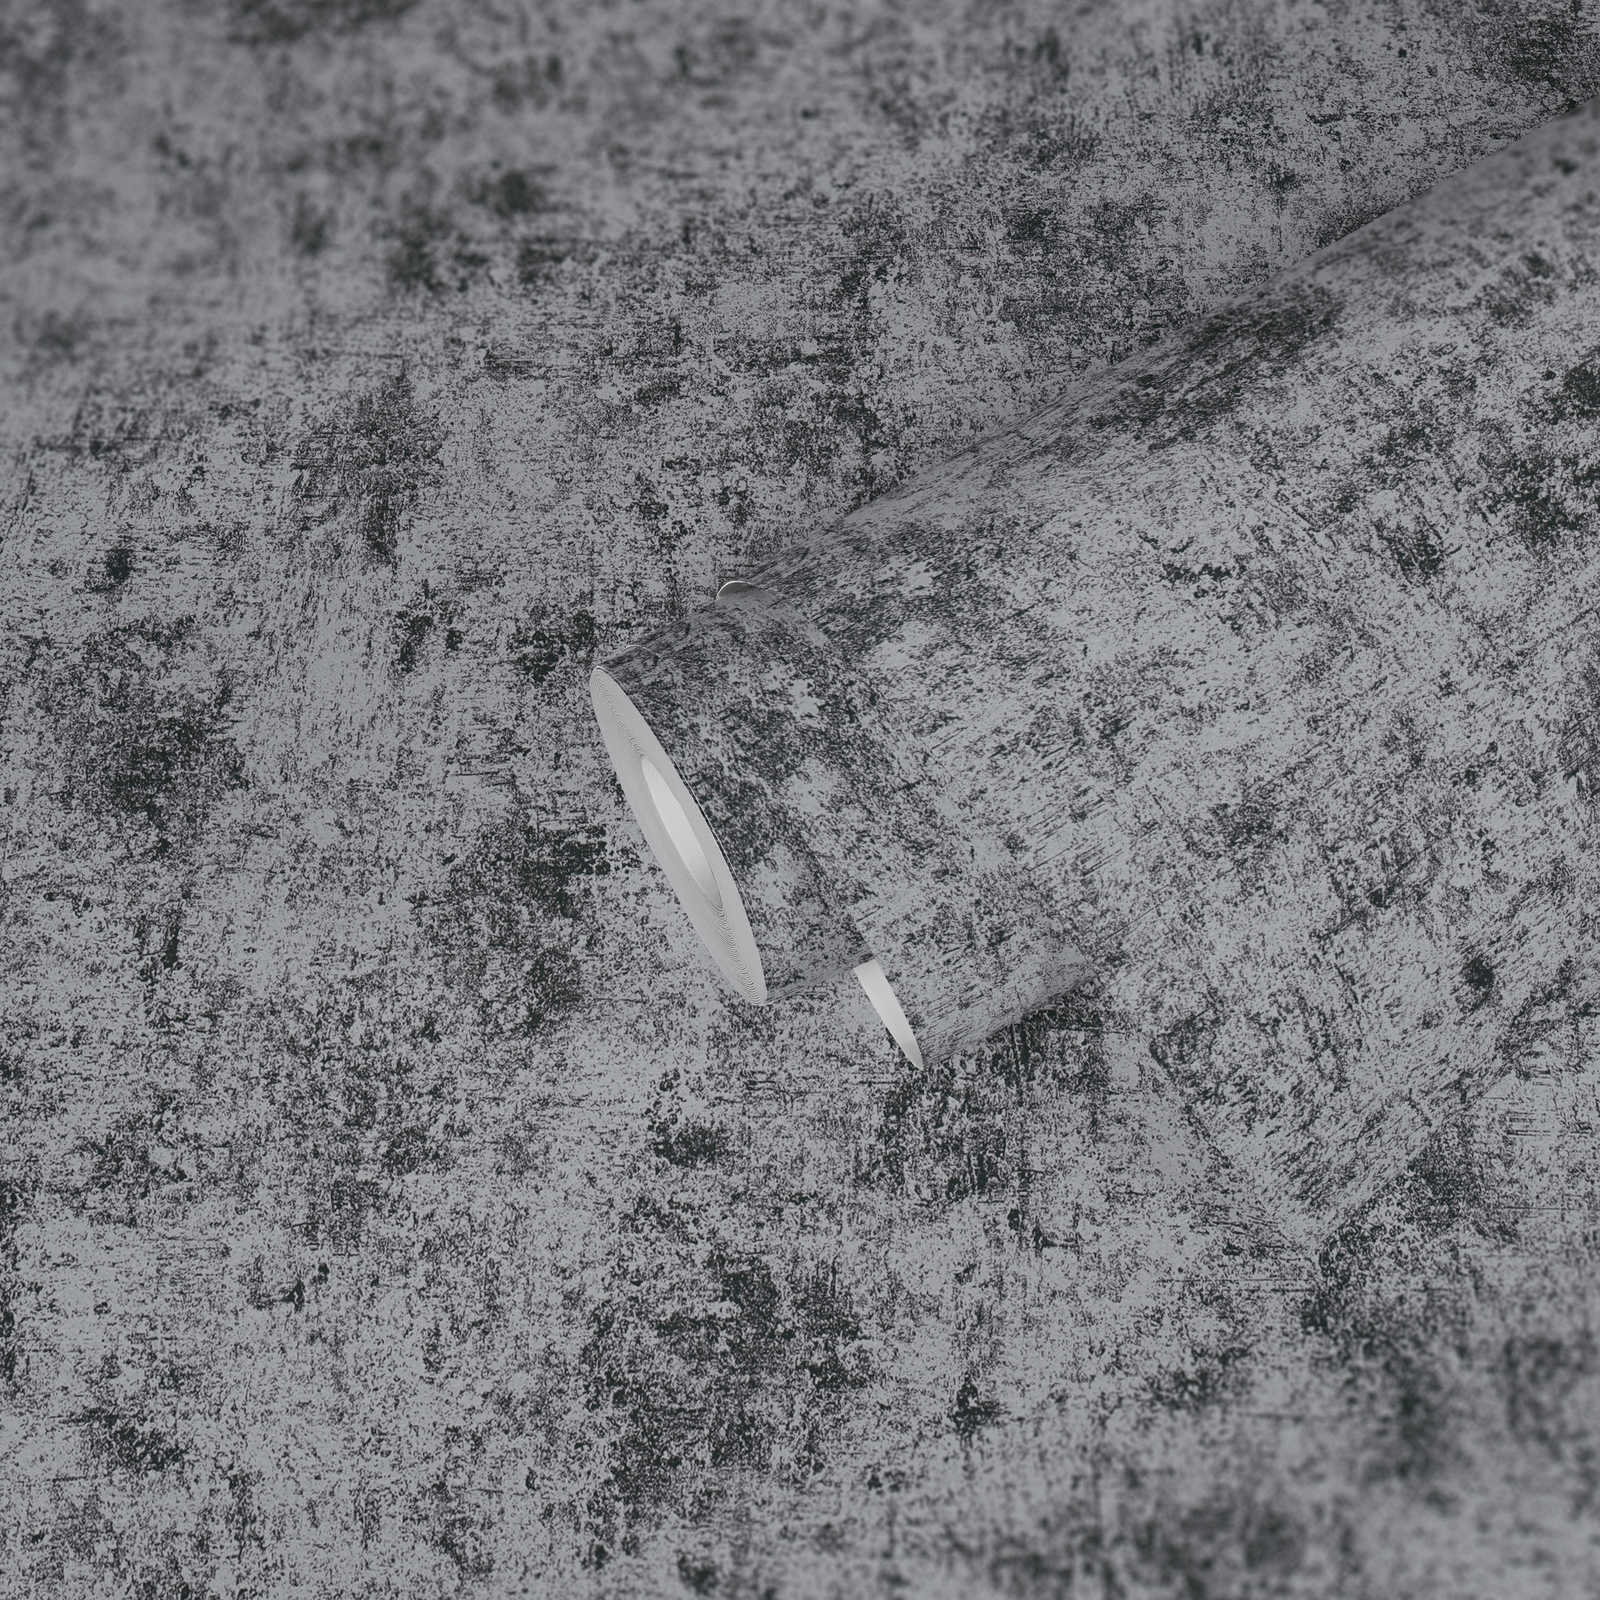             Papel pintado efecto metalizado liso brillante - plata, negro, metalizado
        